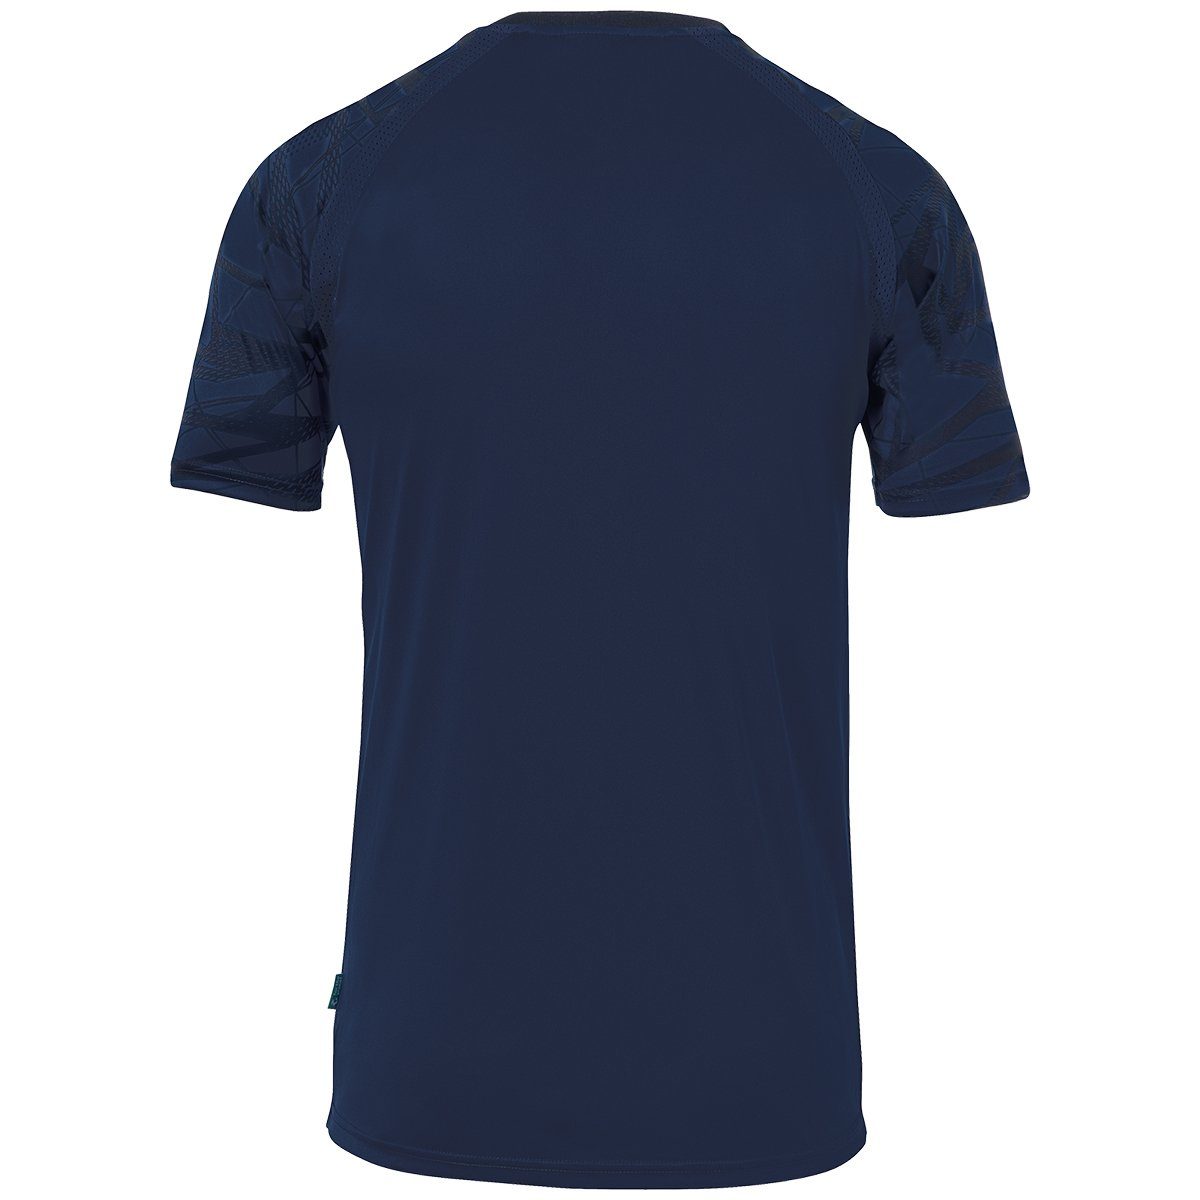 25 uhlsport Trainingsshirt TRIKOT marine/marine GOAL Trainings-T-Shirt atmungsaktiv uhlsport KURZARM